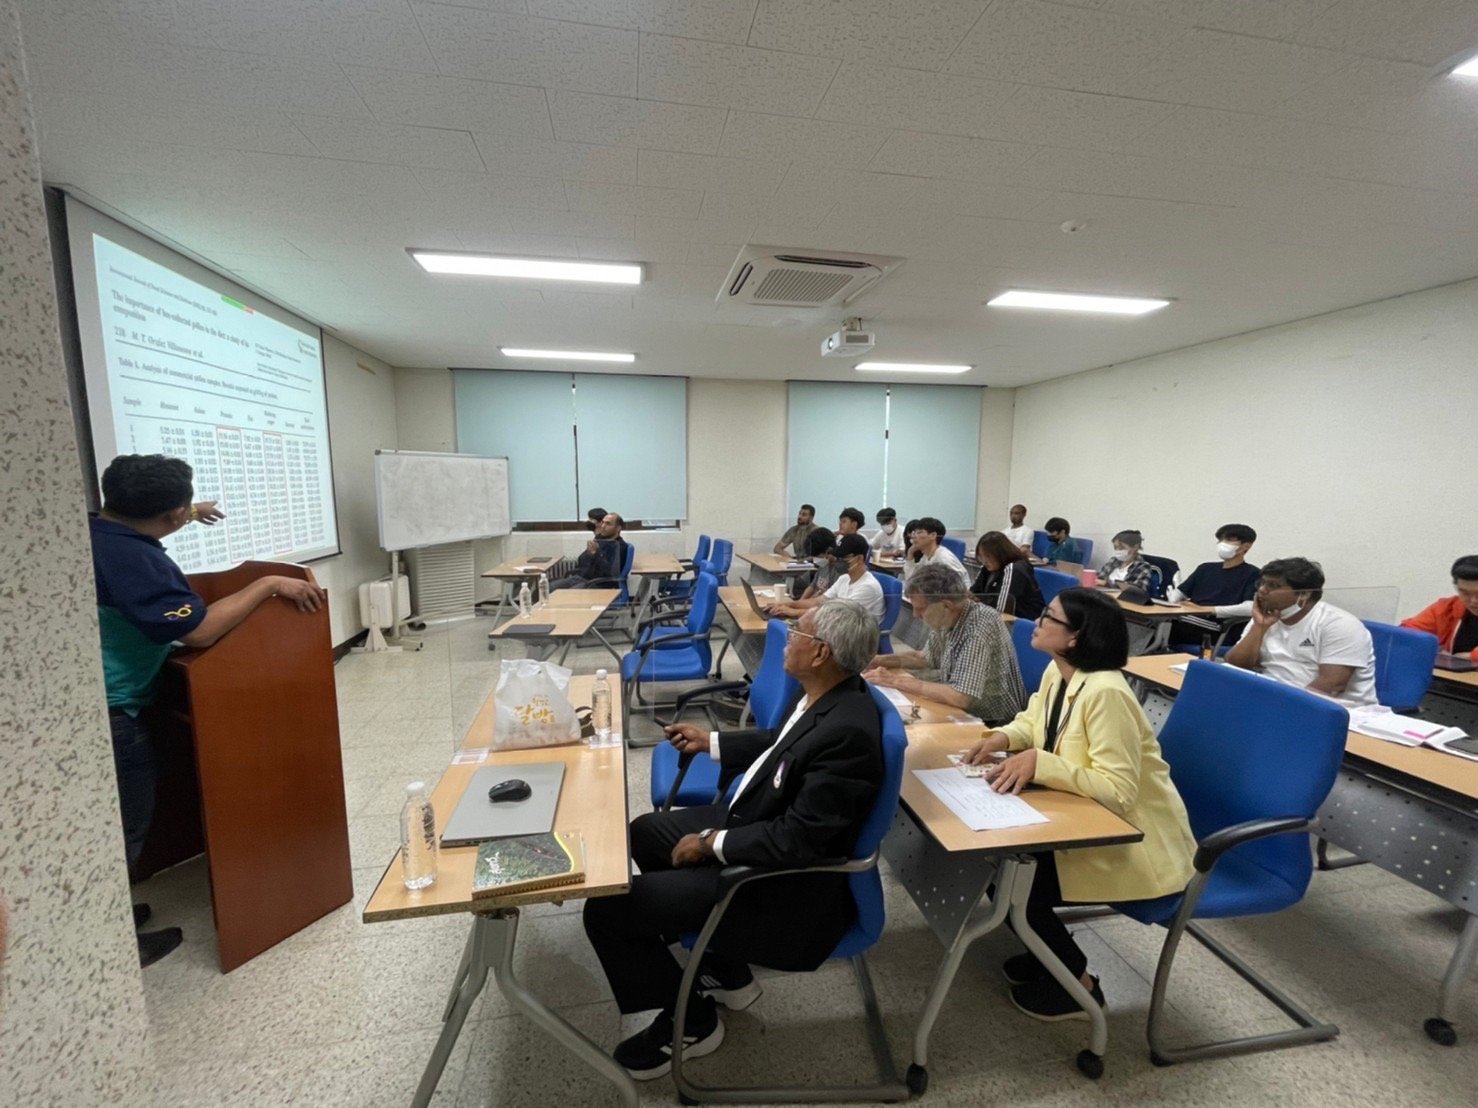 คณะเกษตรศาสตร์และทรัพยากรธรรมชาติ มหาวิทยาลัยพะเยา เจรจาความร่วมมือด้านงานวิจัยกับ Andong National University, Republic of Korea